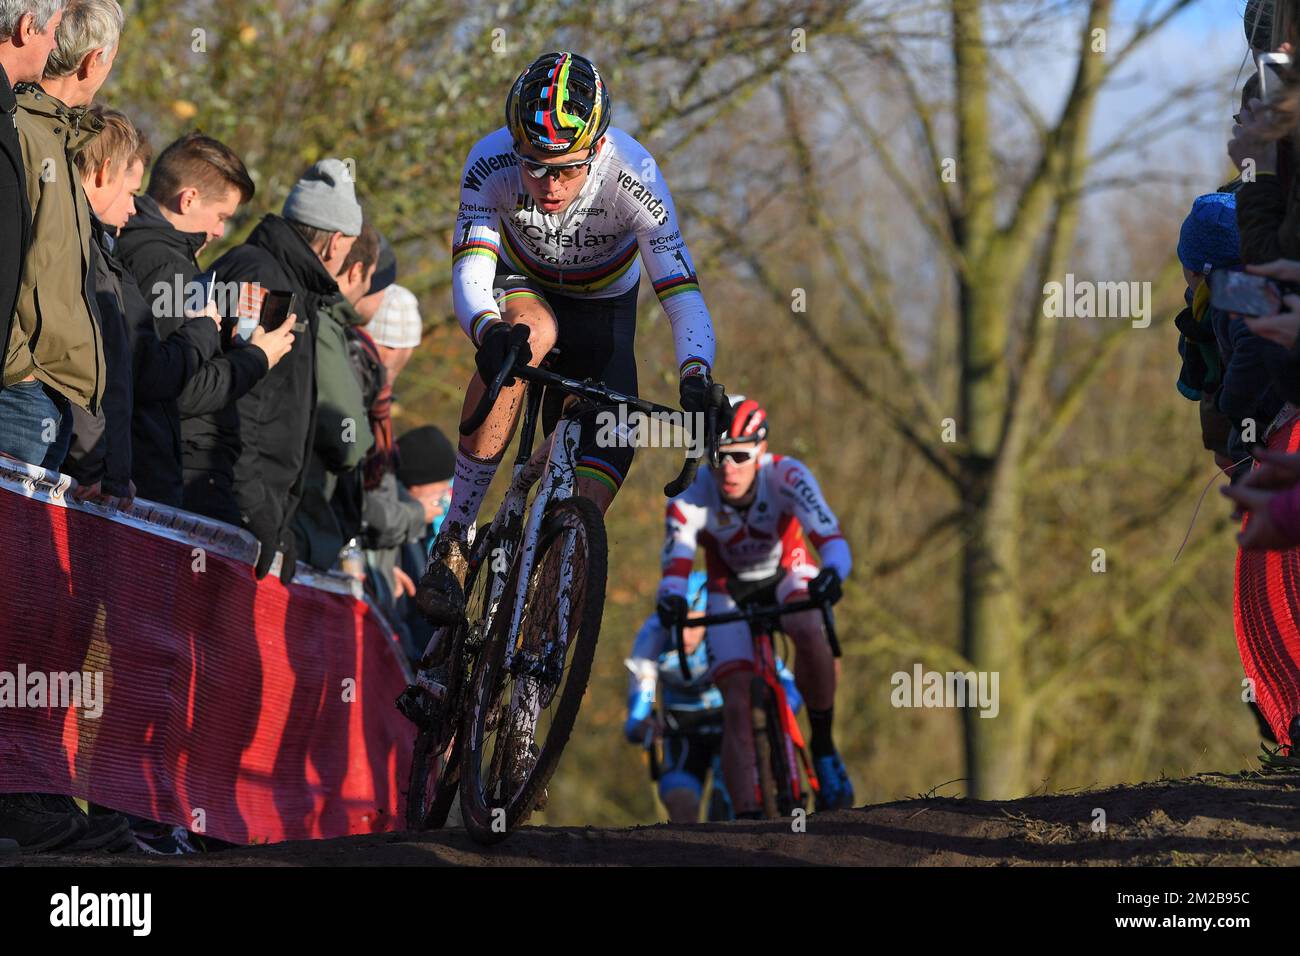 Belge Wout Van Aert en action lors de la course d'élite masculine du  cyclocross 'Flandriencross' à Hamme, troisième étape de la compétition de  cyclocross de DVV Trofee, dimanche 26 novembre 2017. BELGA